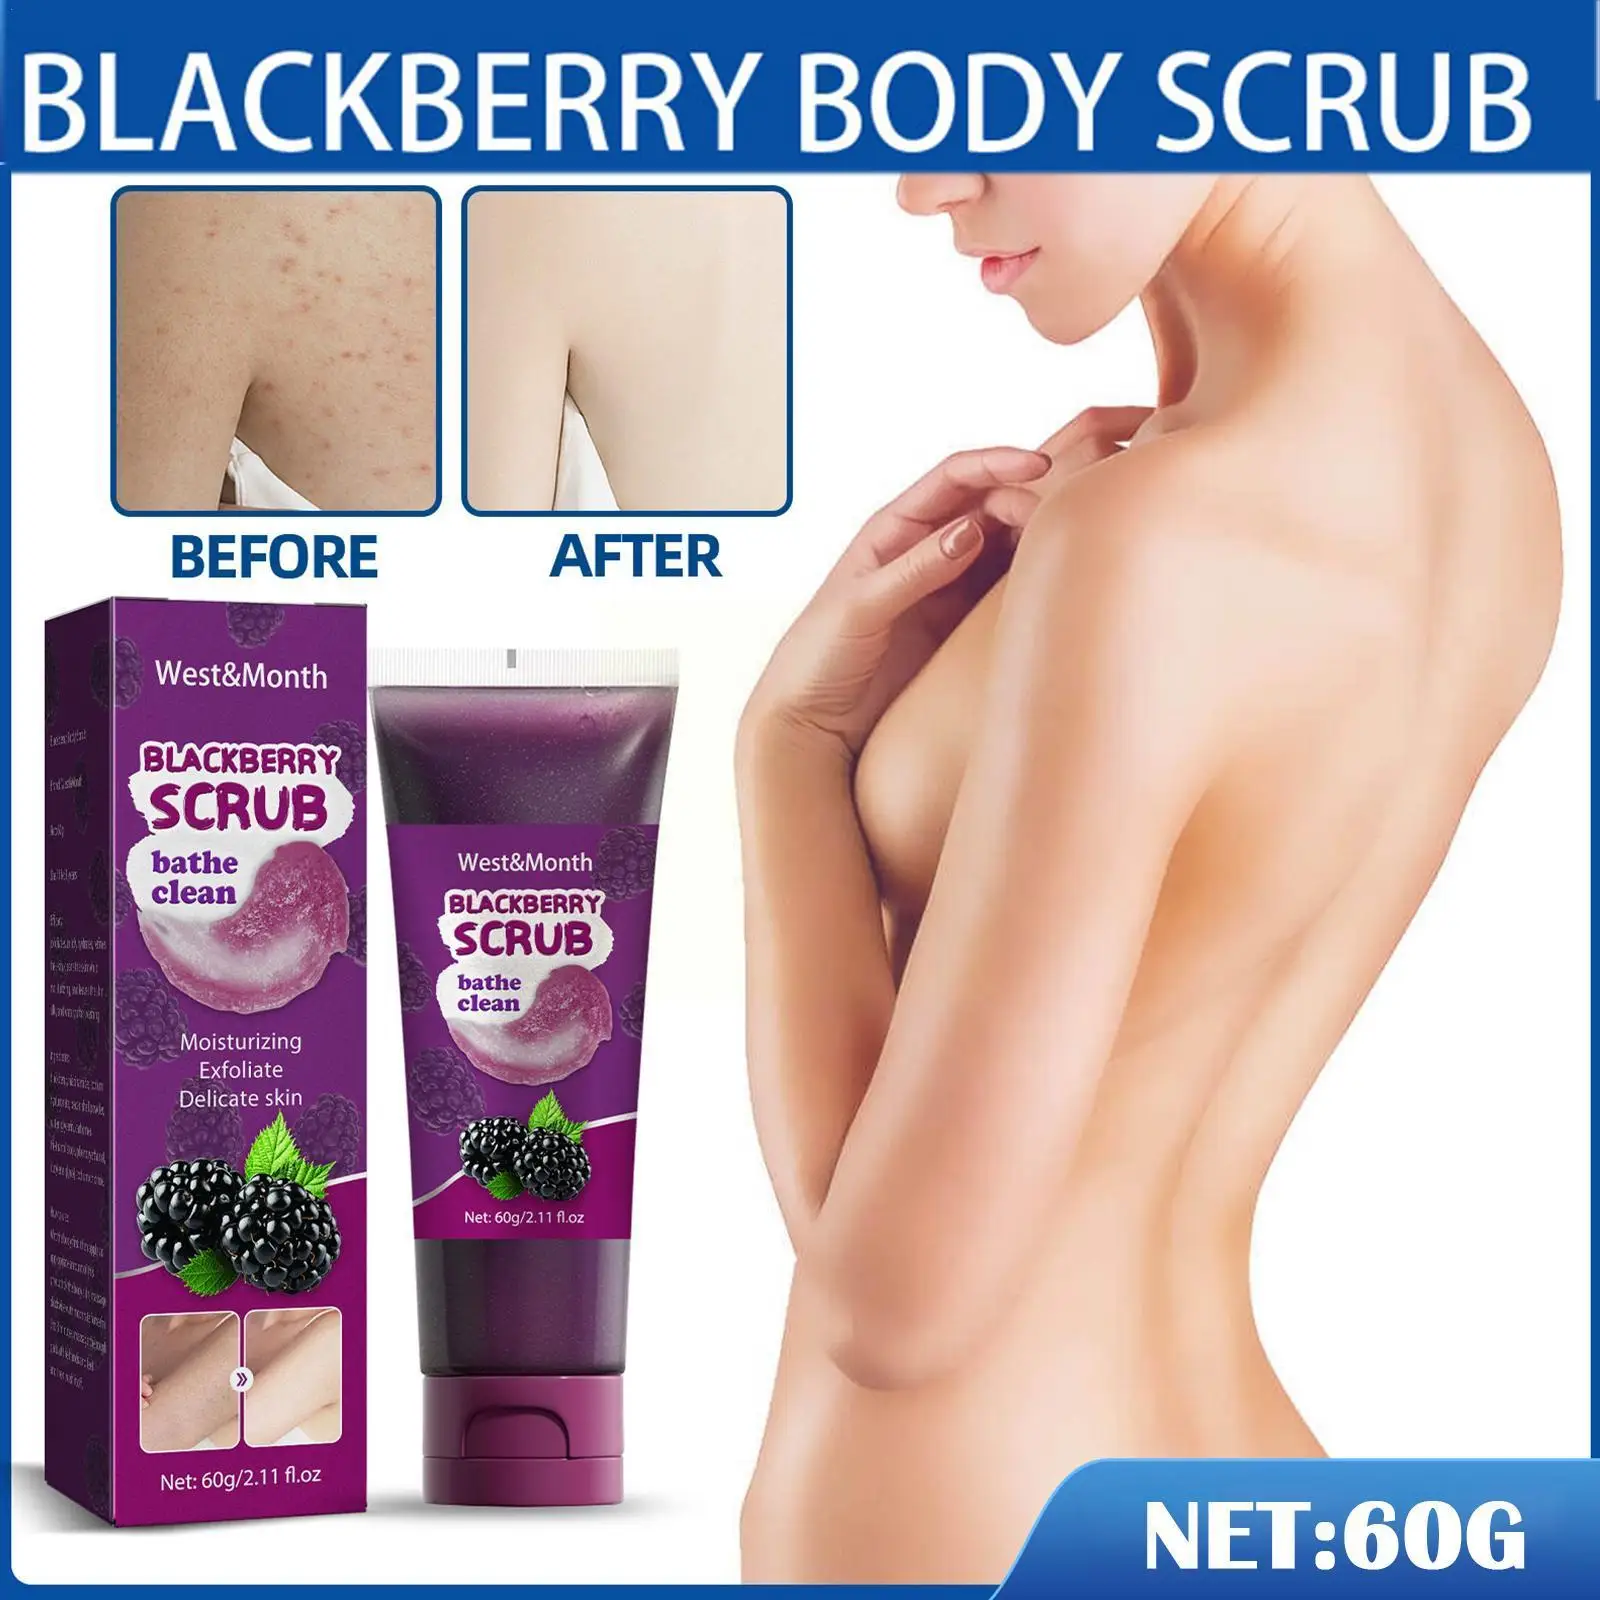 

Blackberries Body Scrub Body Skin Care Oil Control Scrub Whitening Bath Chicken Remove Skin Body Exfoliating Nourishes Care S3Q9